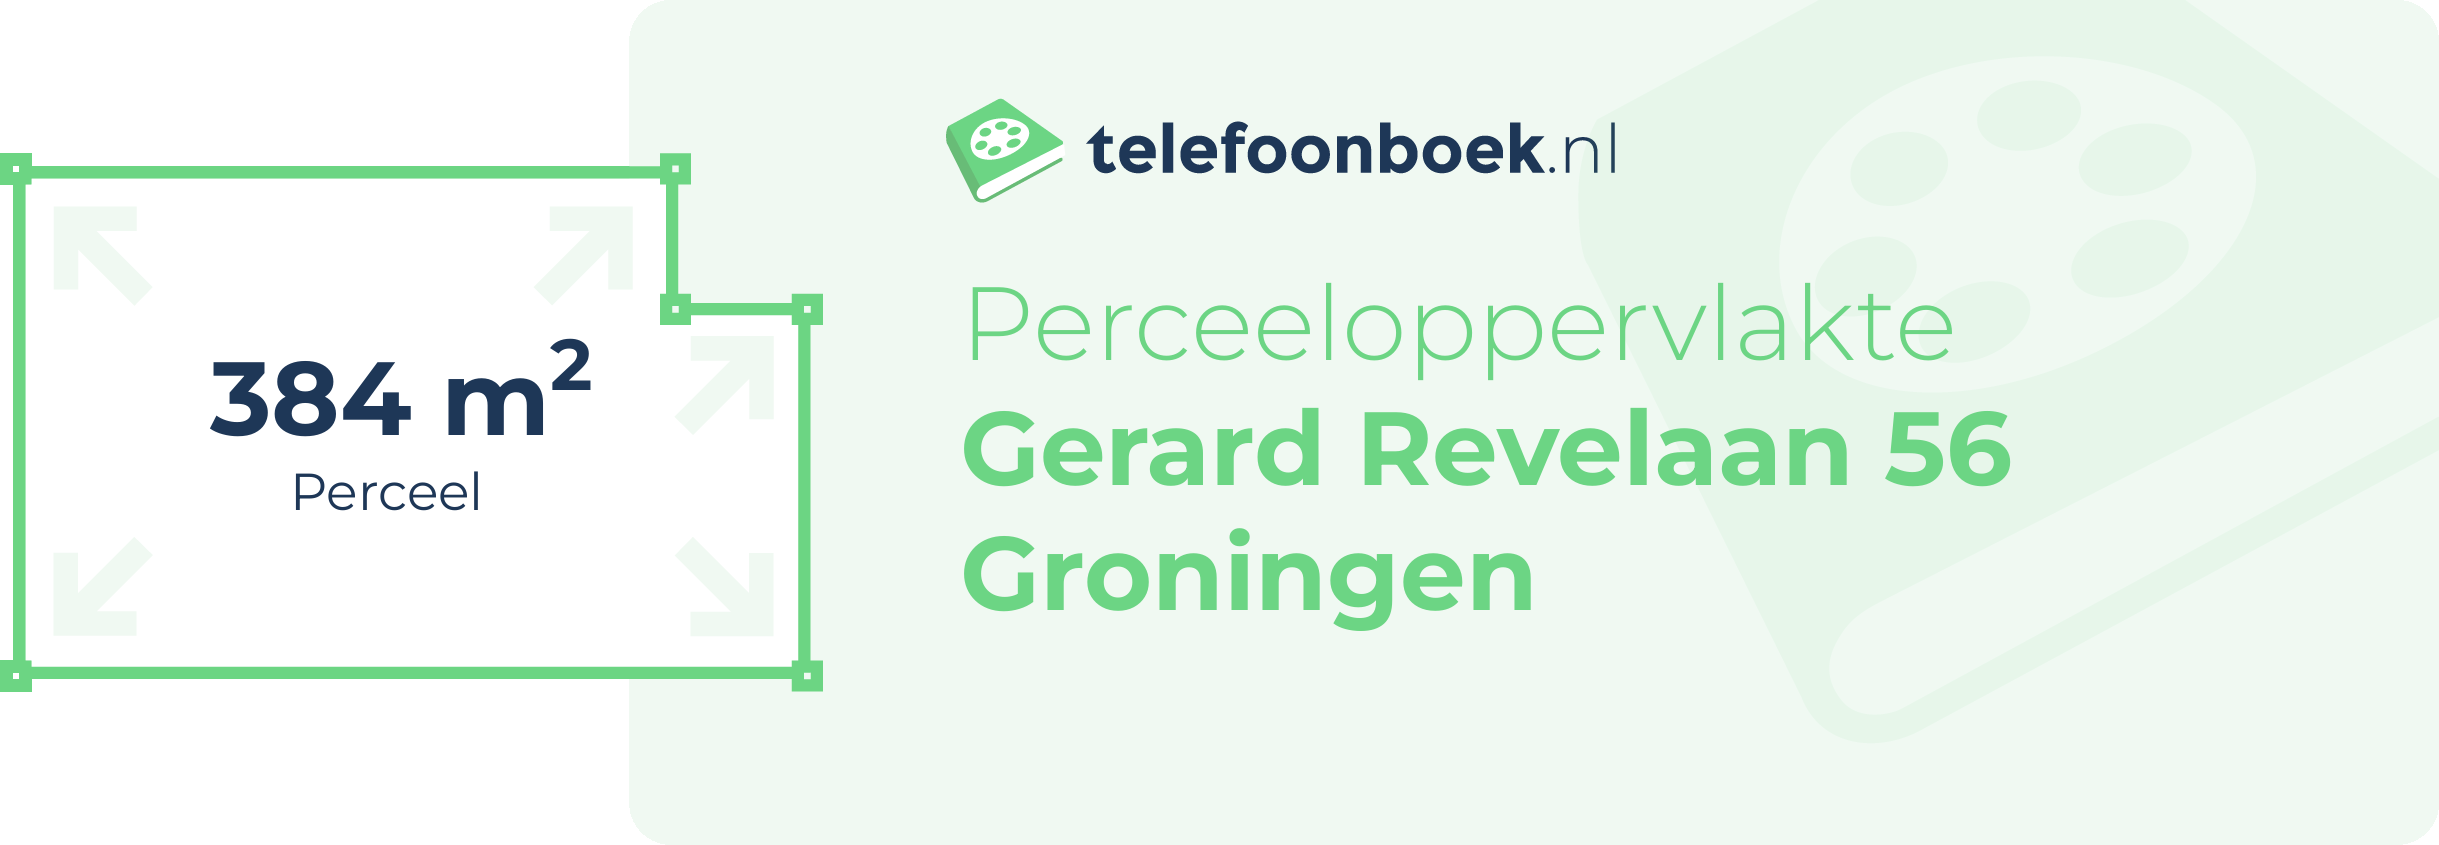 Perceeloppervlakte Gerard Revelaan 56 Groningen